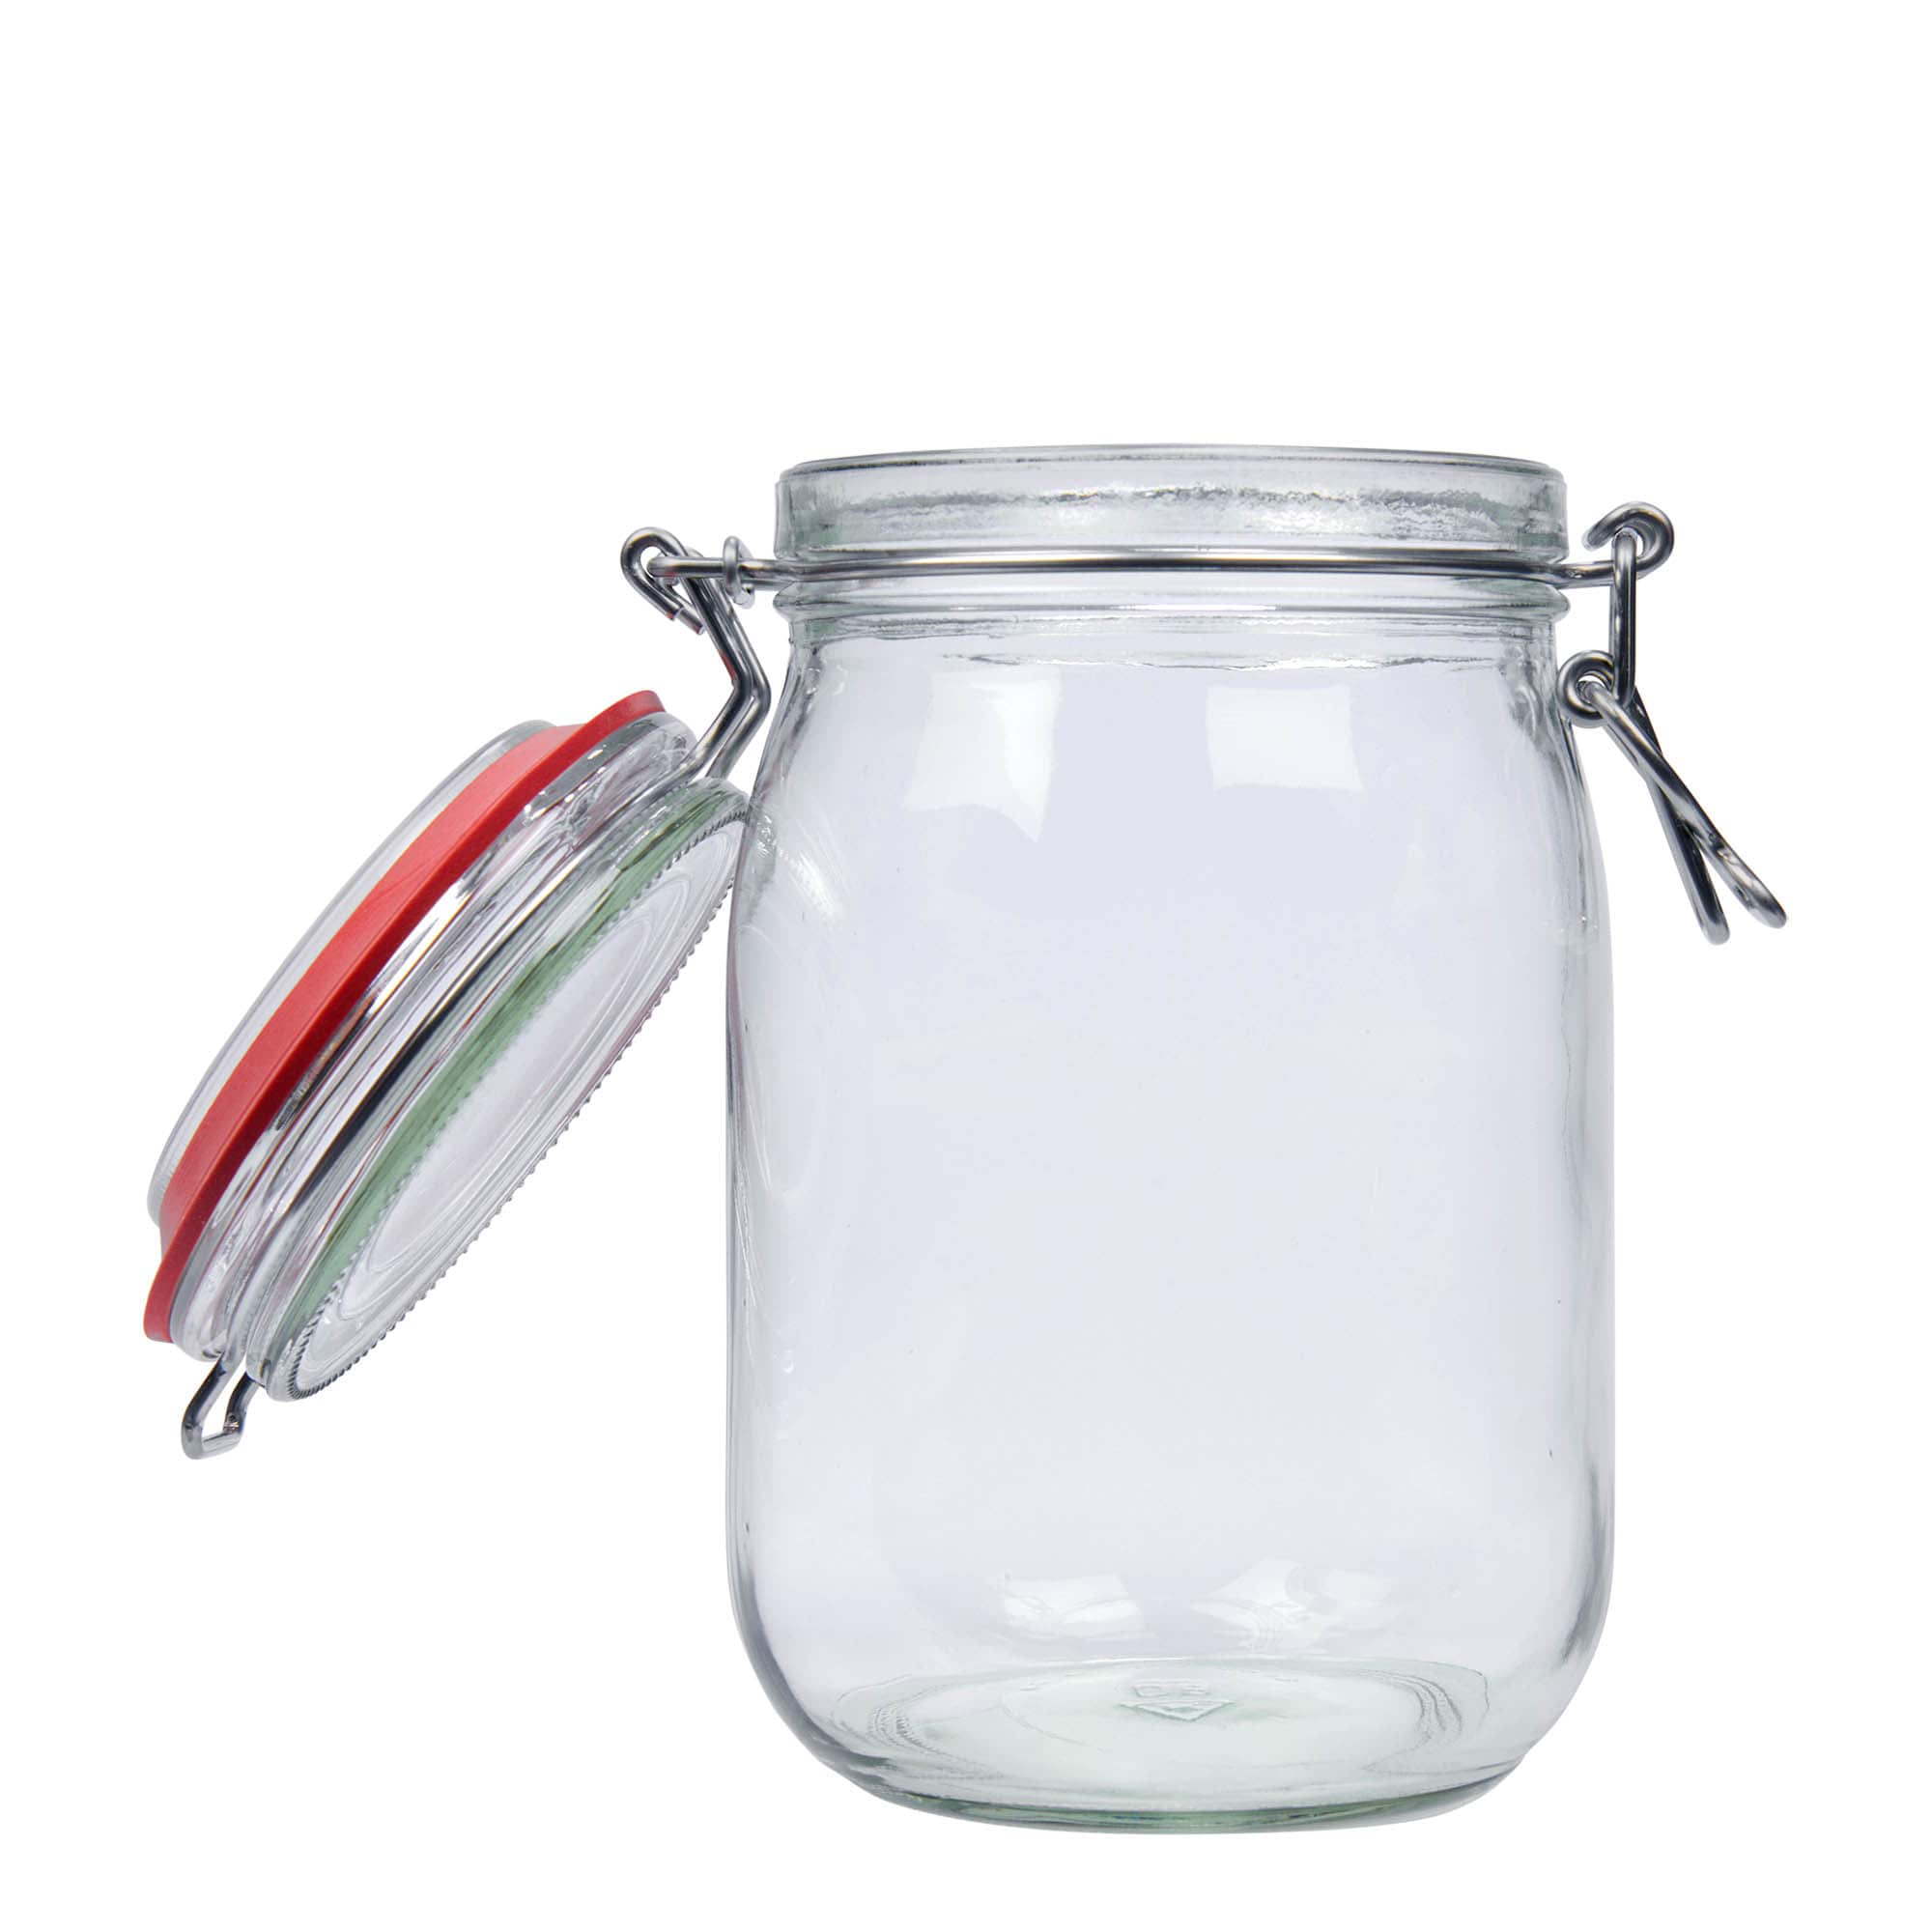 1,140 ml clip top jar, closure: clip top